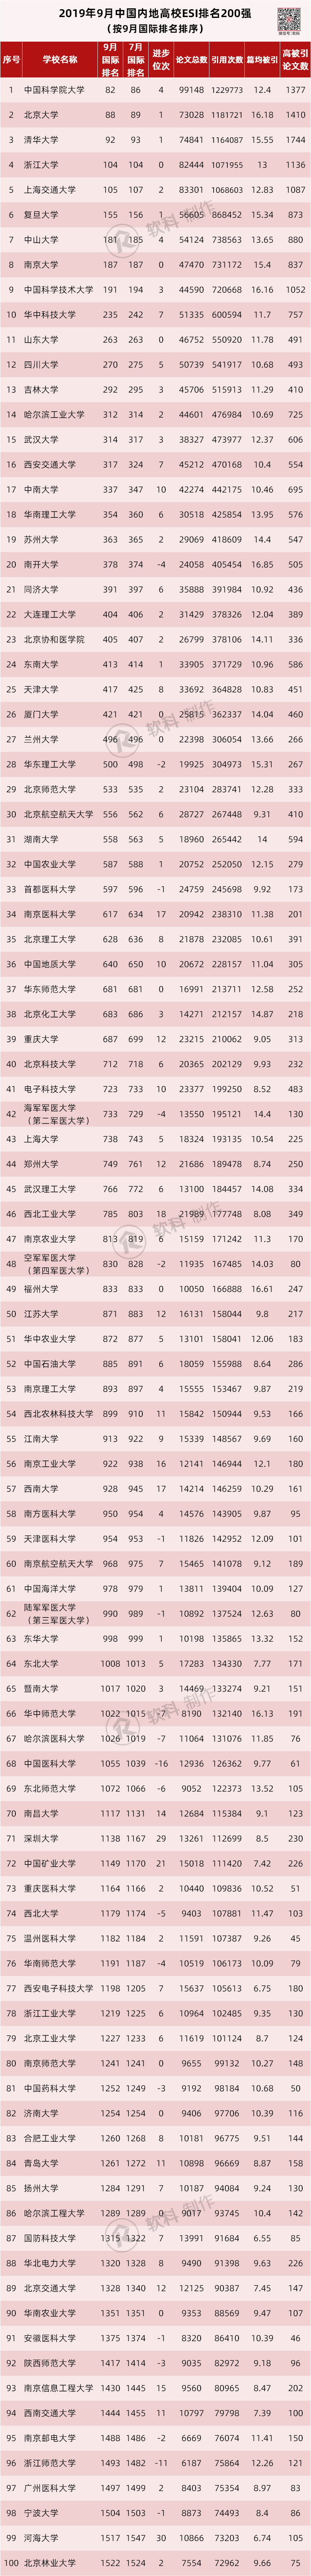 中国内地高校ESI排行榜